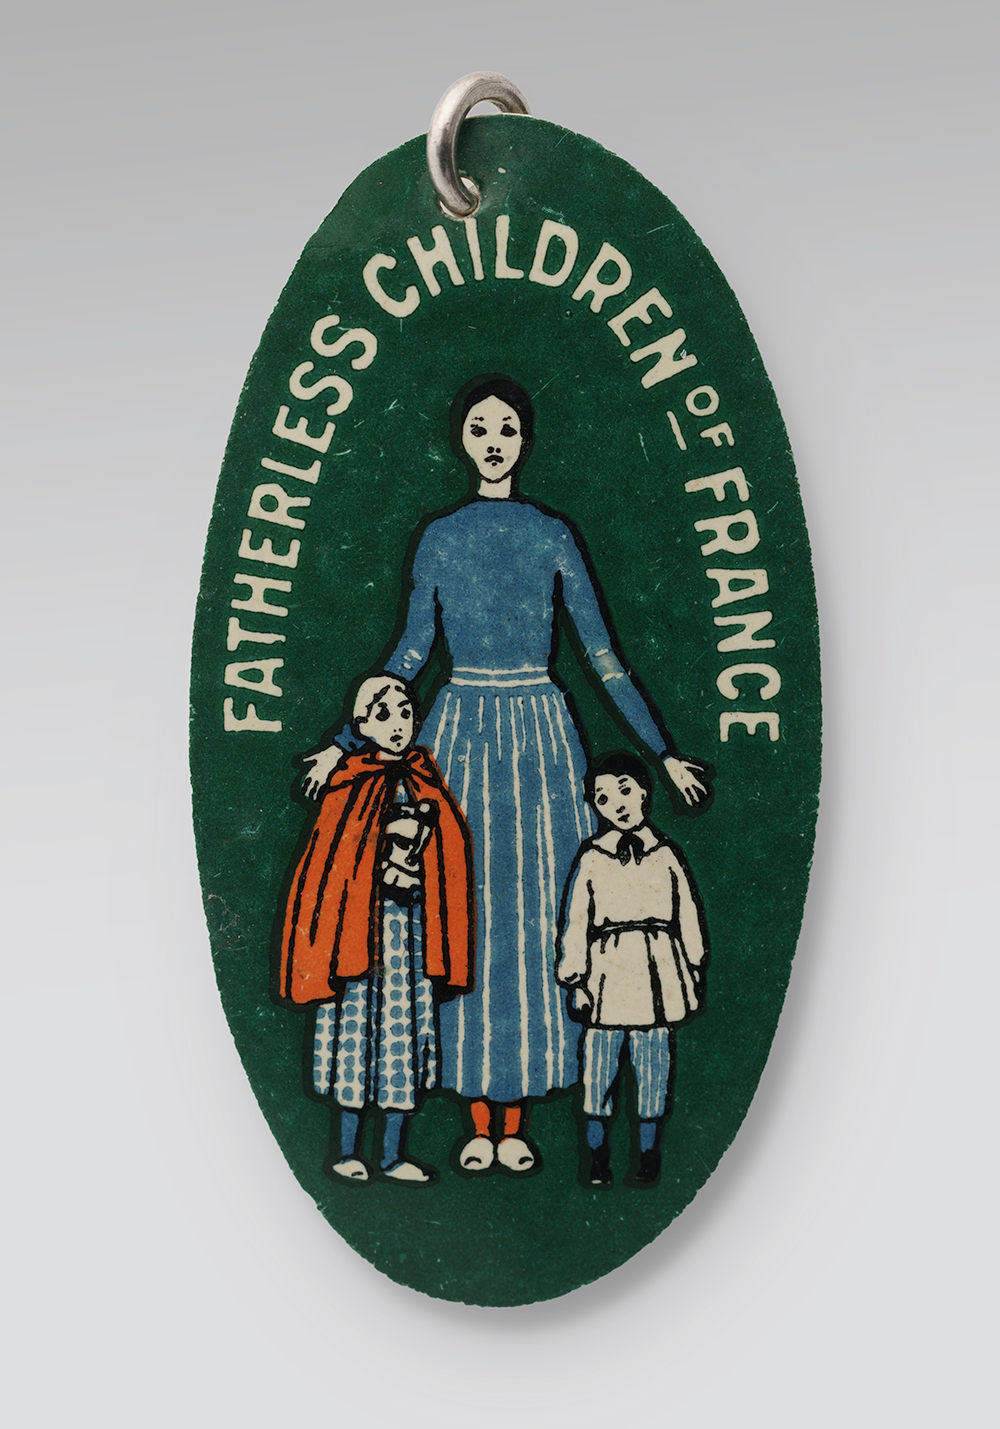 Pin's ovale à fond vert. Illustré de dessins d'une femme et de deux enfants. Texte en haut : « Enfants orphelins de France »